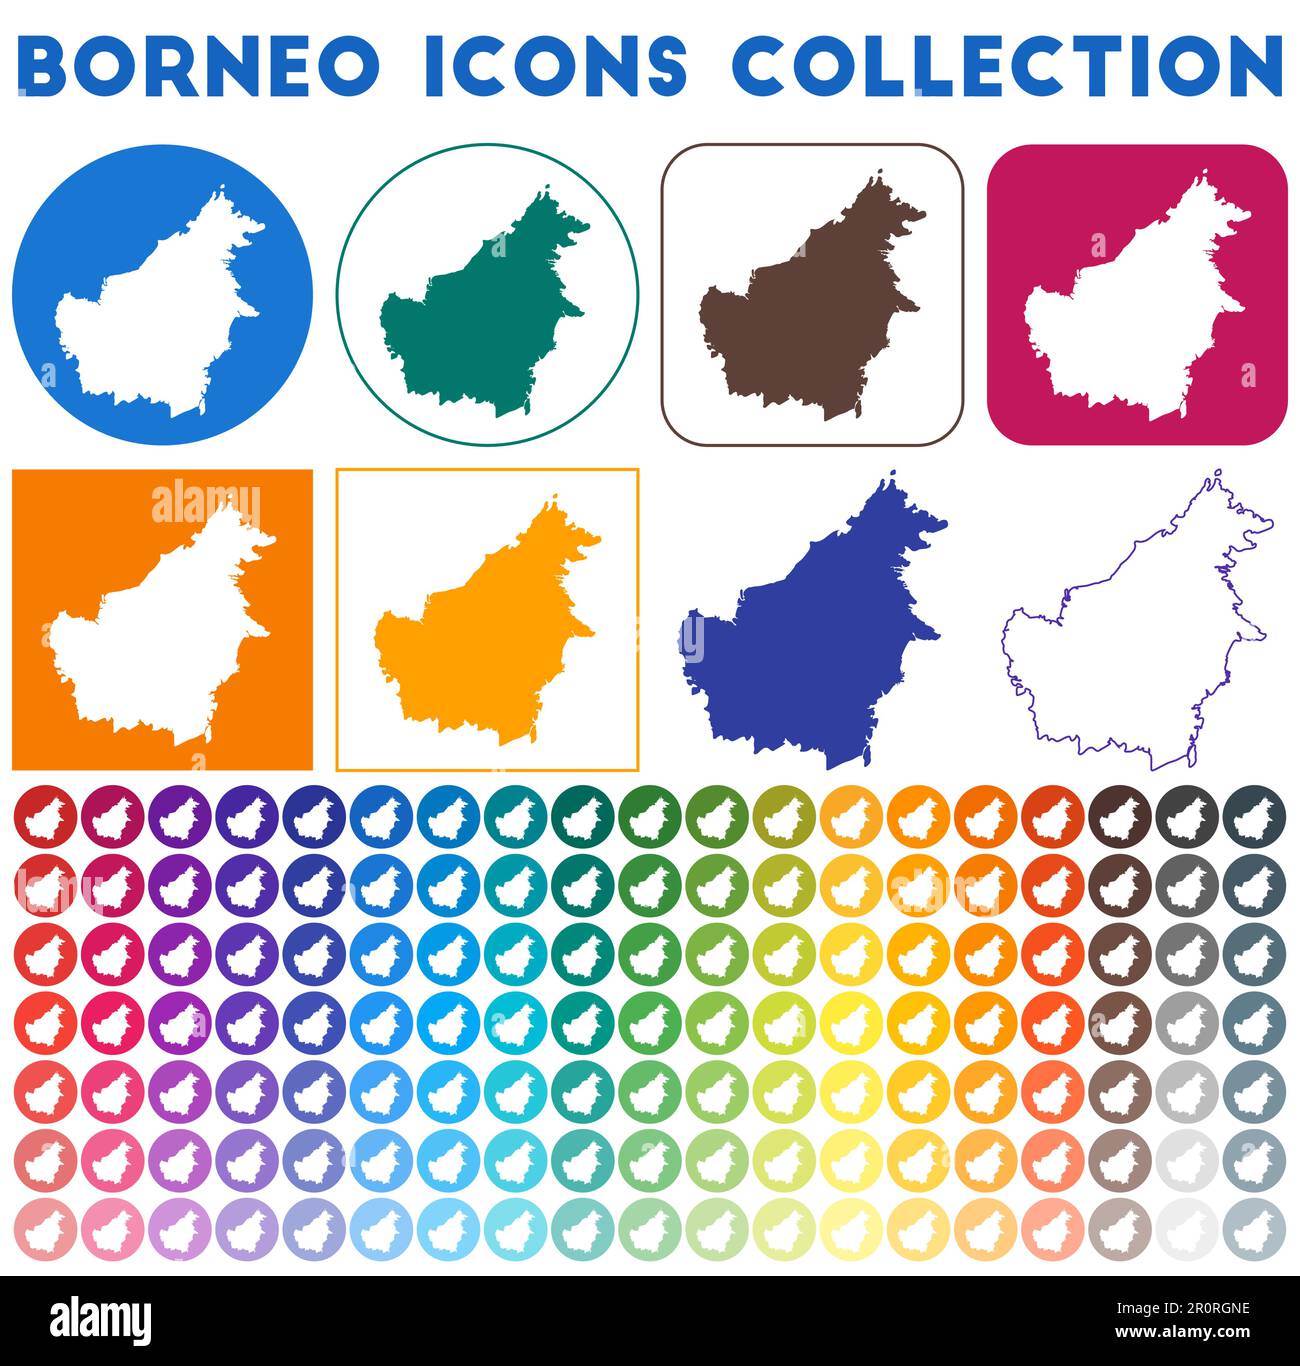 Collezione icone Borneo. Icone luminose e colorate alla moda. Badge Borneo moderno con mappa dell'isola. Illustrazione vettoriale. Illustrazione Vettoriale